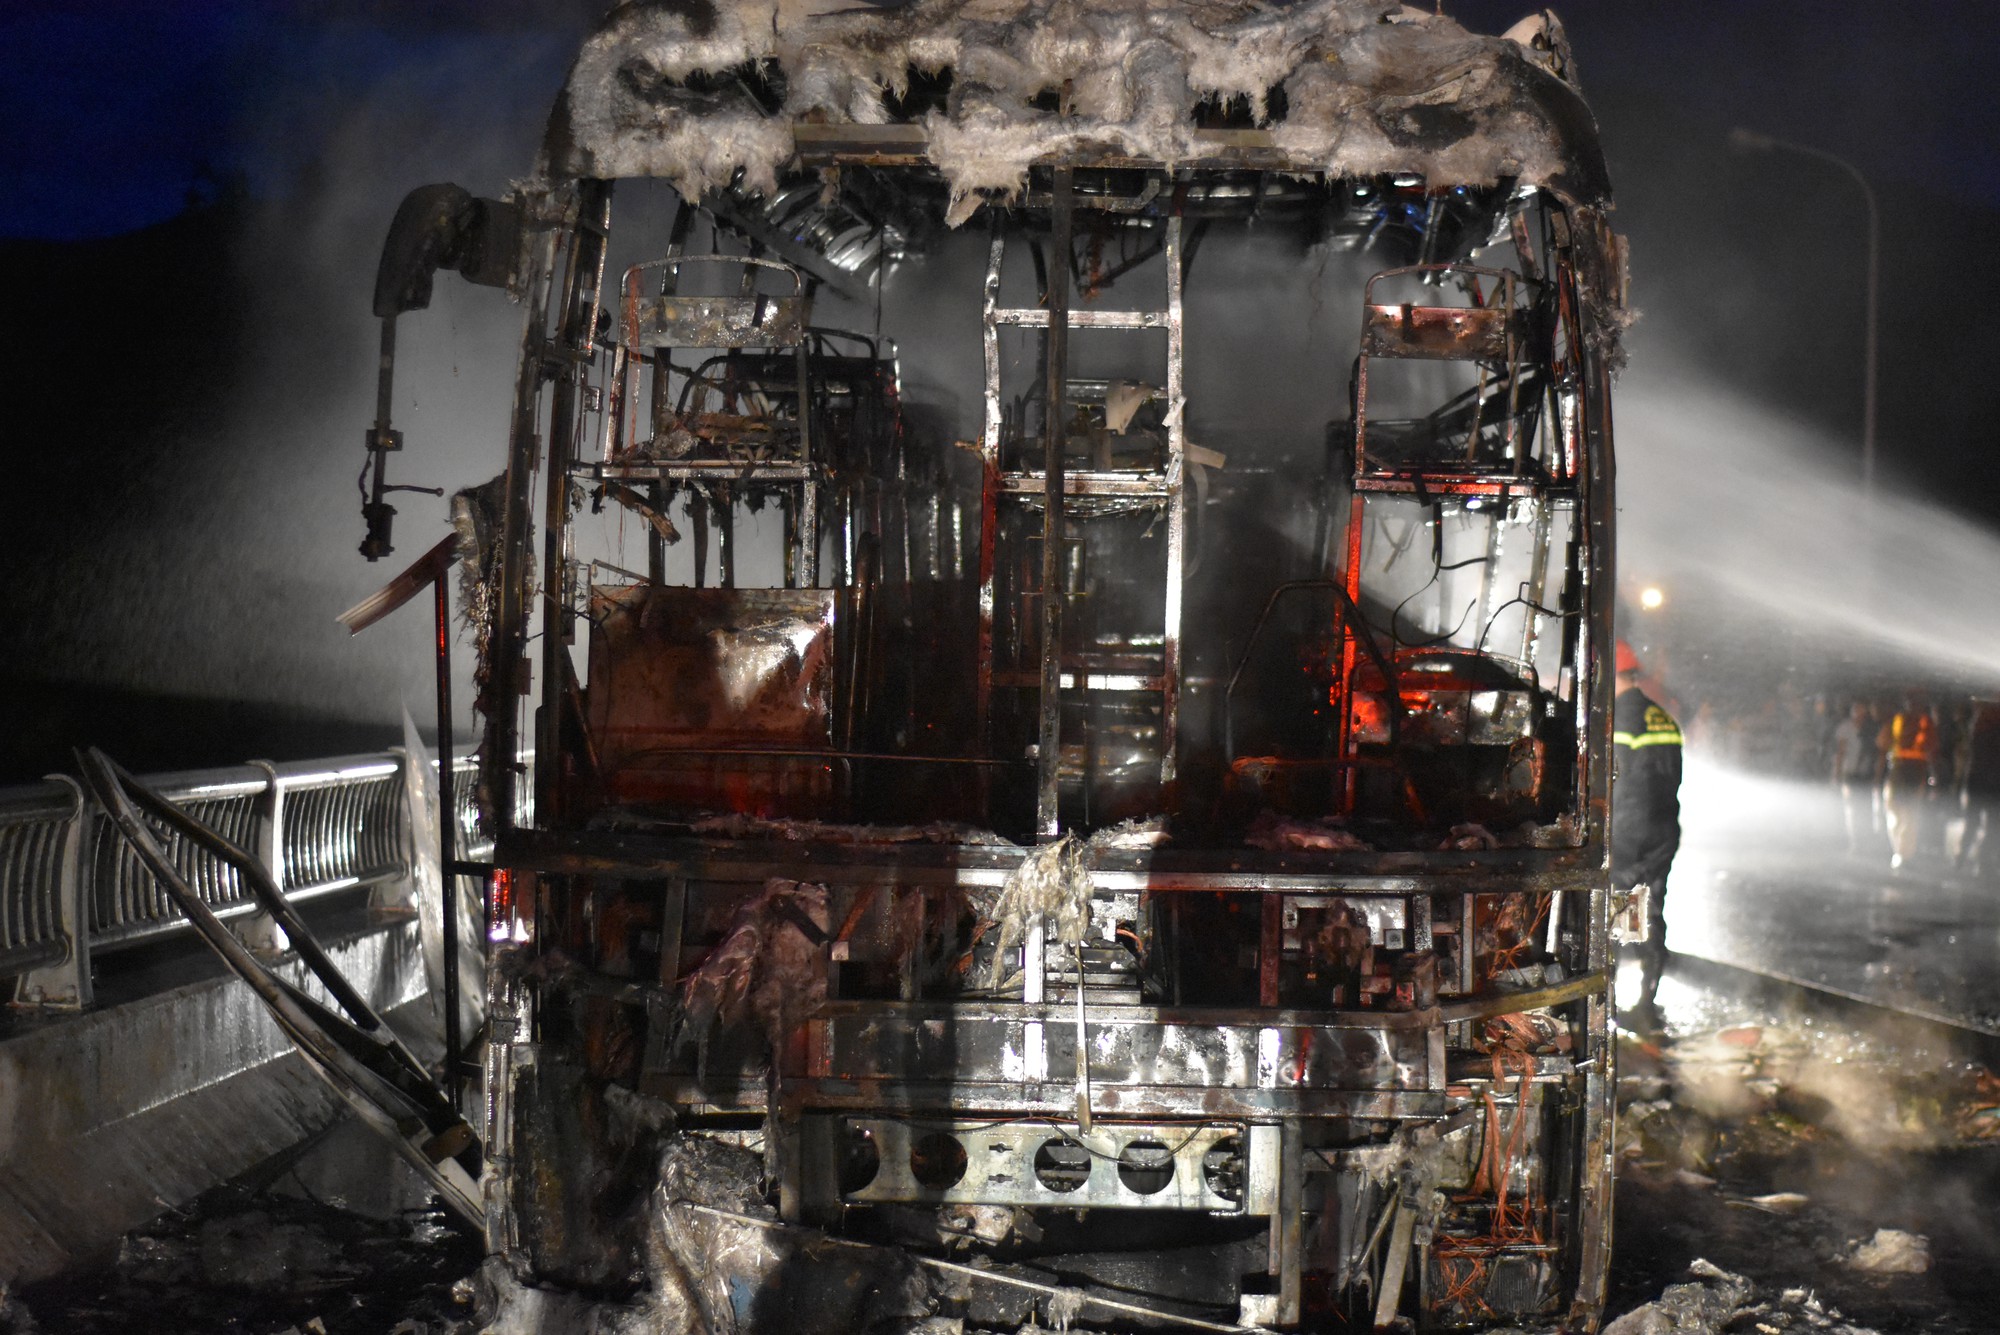 Xe khách bốc cháy ngùn ngụt sau tiếng nổ, hàng chục hành khách hoảng loạn - Ảnh 4.